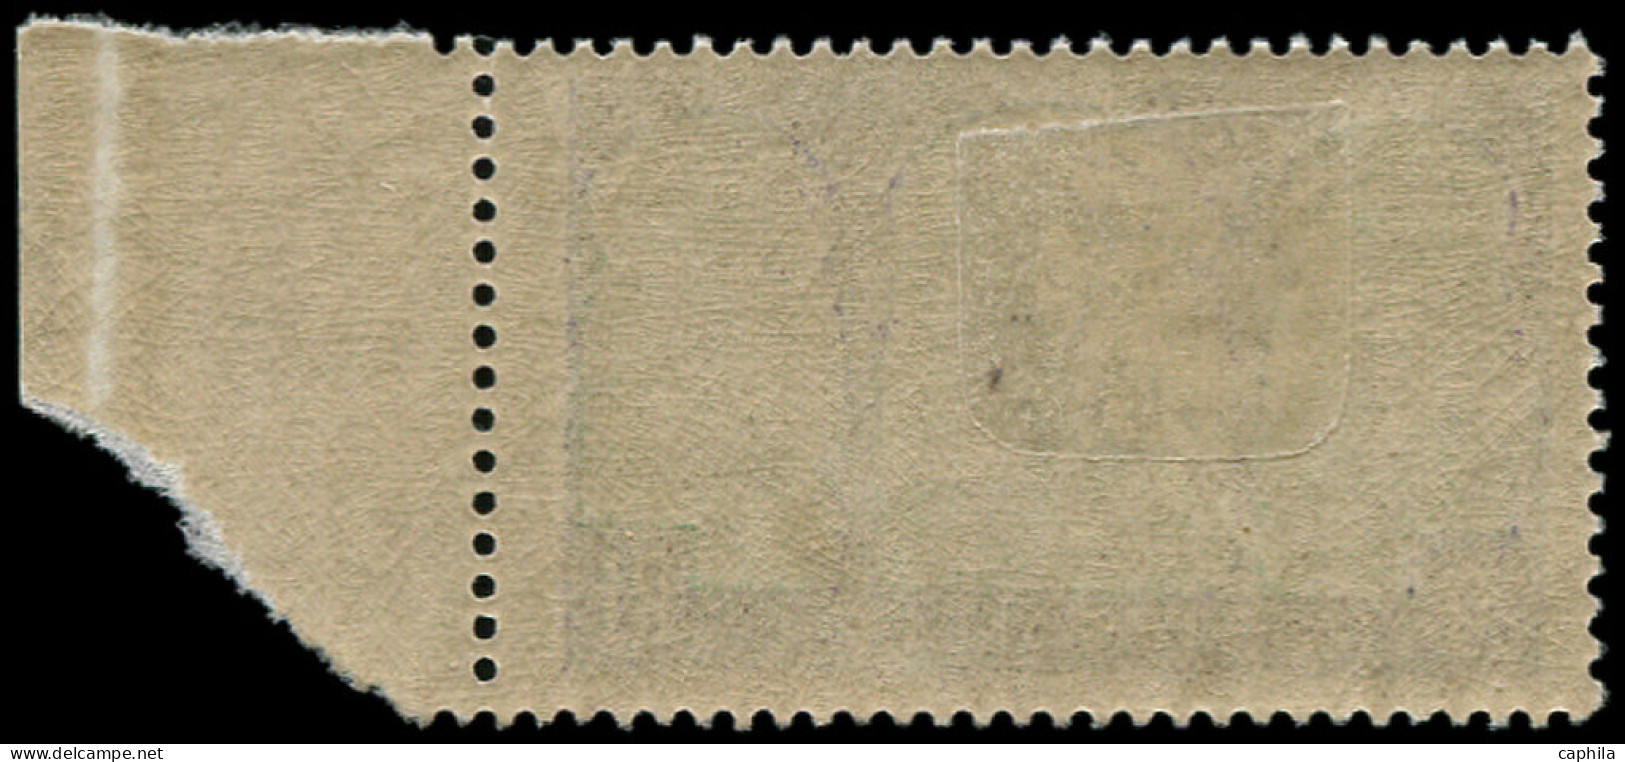 * ALGERIE - Poste - 85b, Arbre Coupé, Bdf: 20f. - Unused Stamps